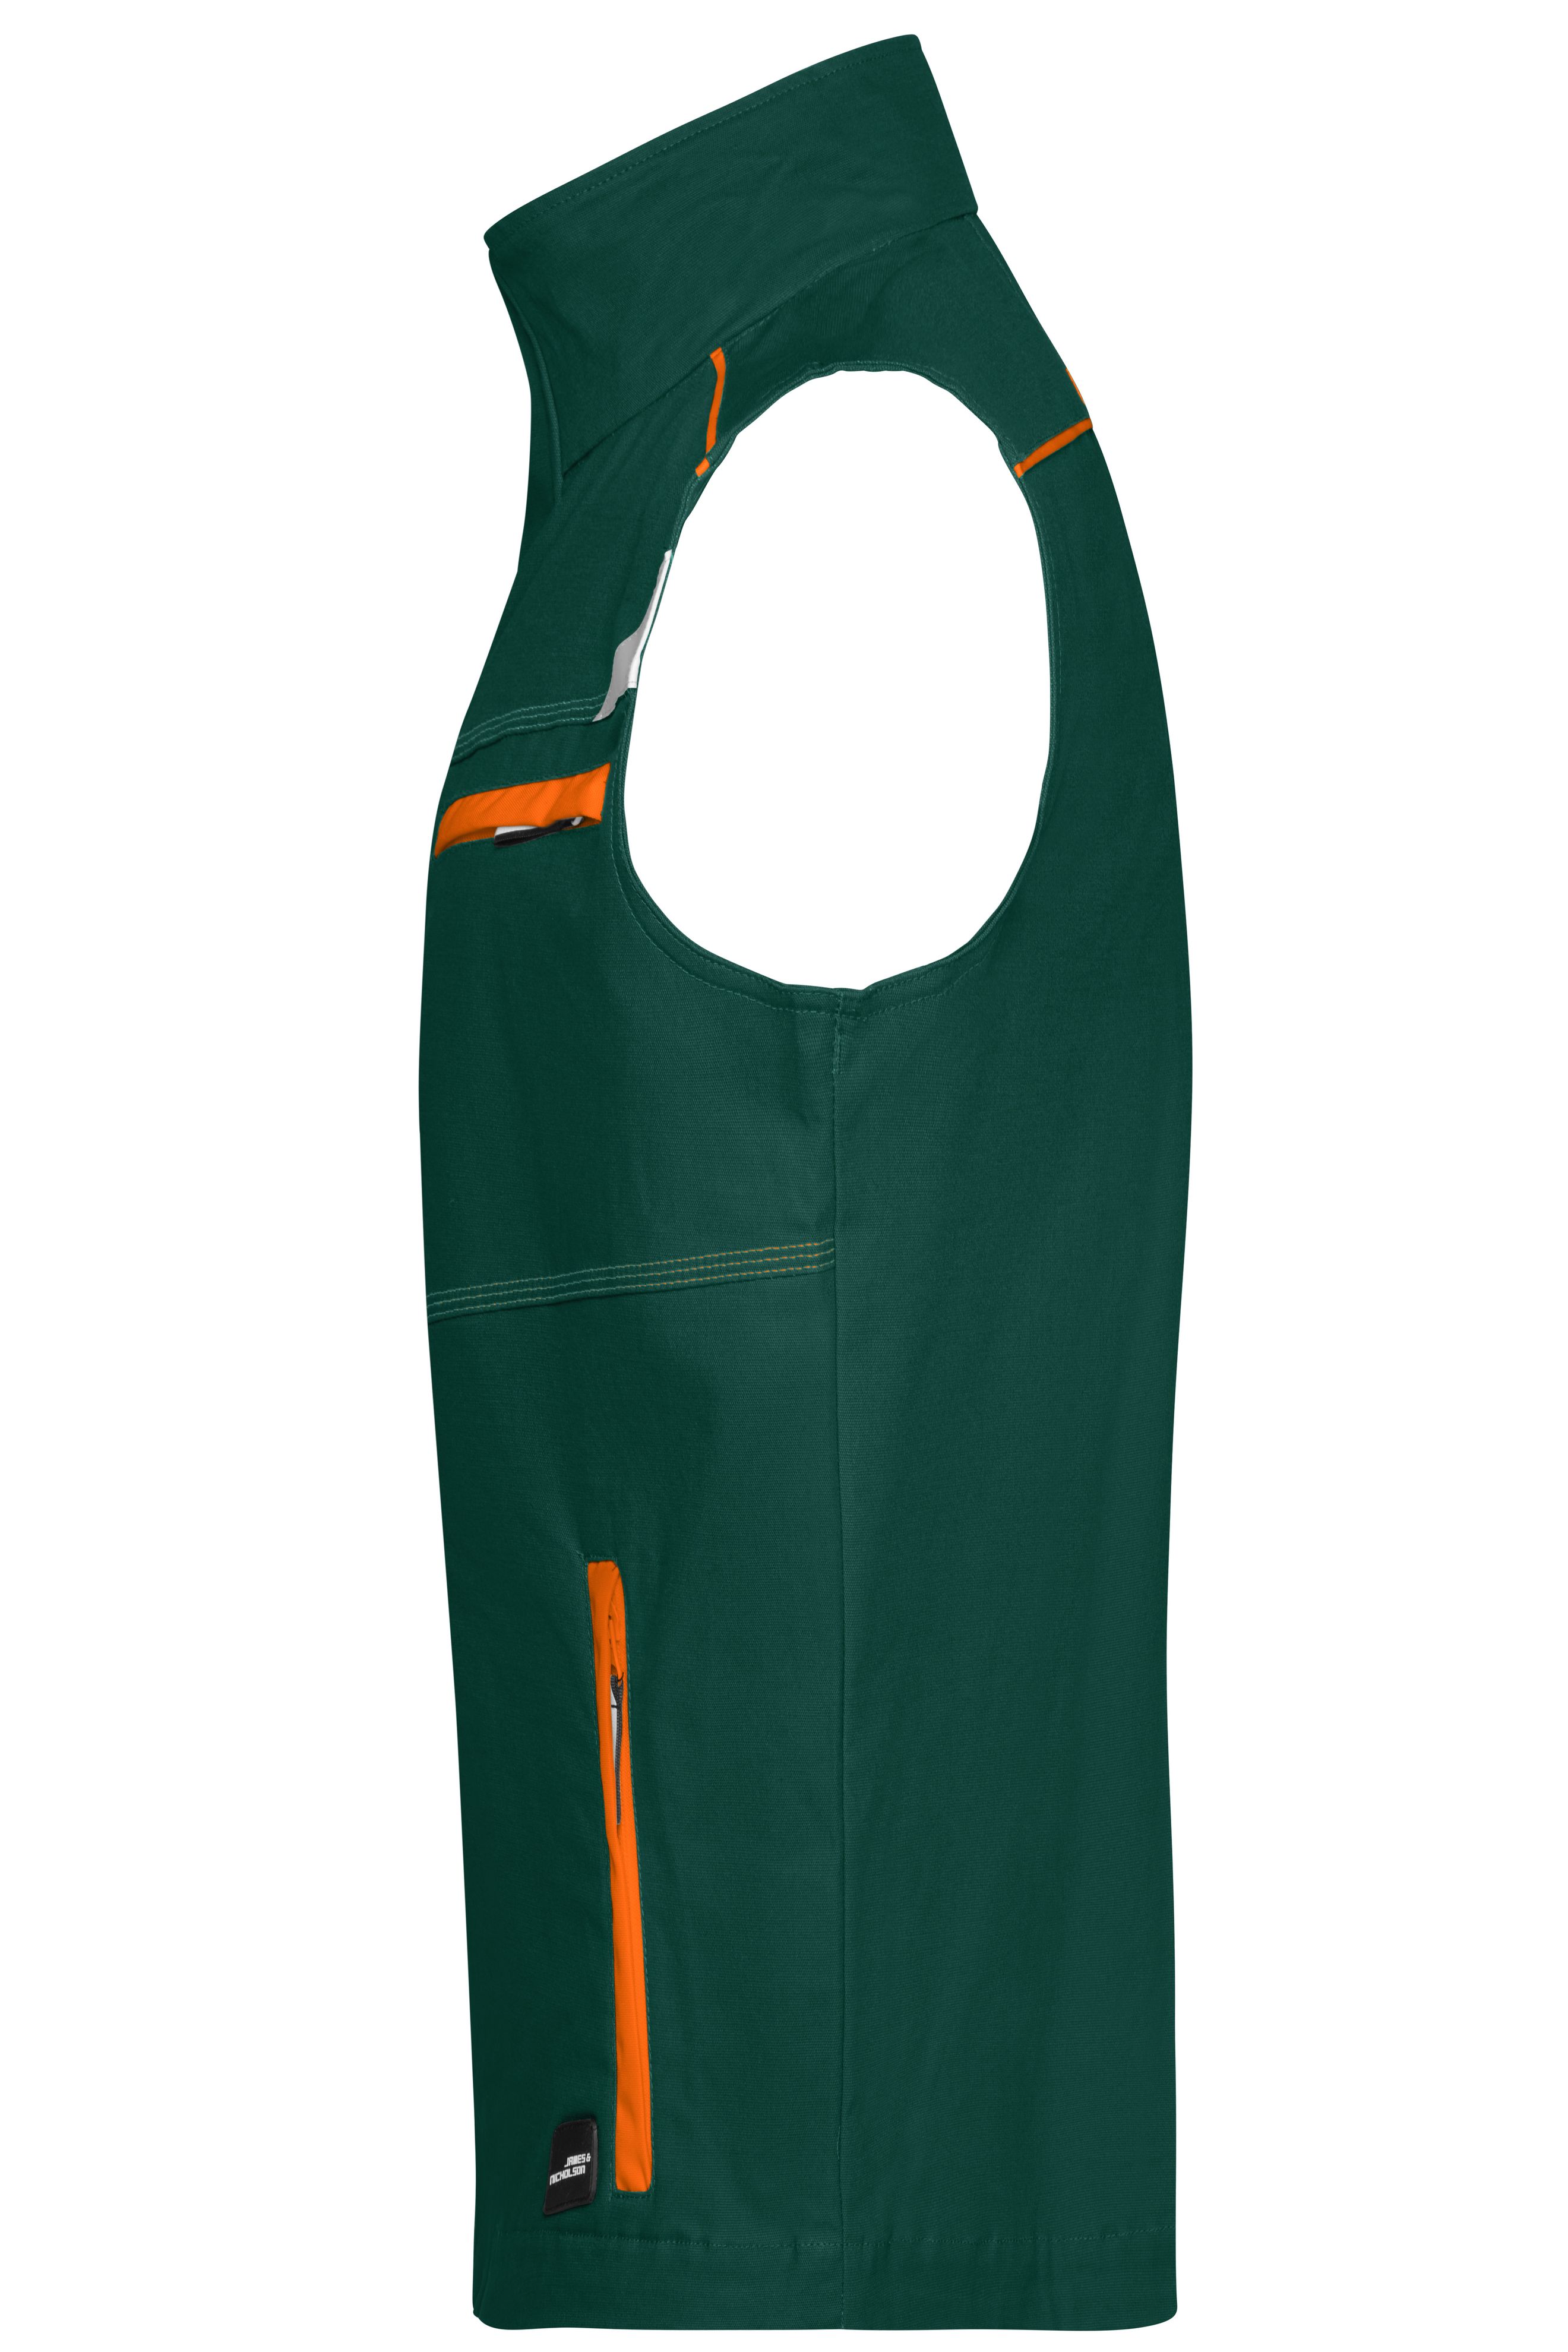 Workwear Vest - COLOR - JN850 Funktionelle Weste im sportlichen Look mit hochwertigen Details